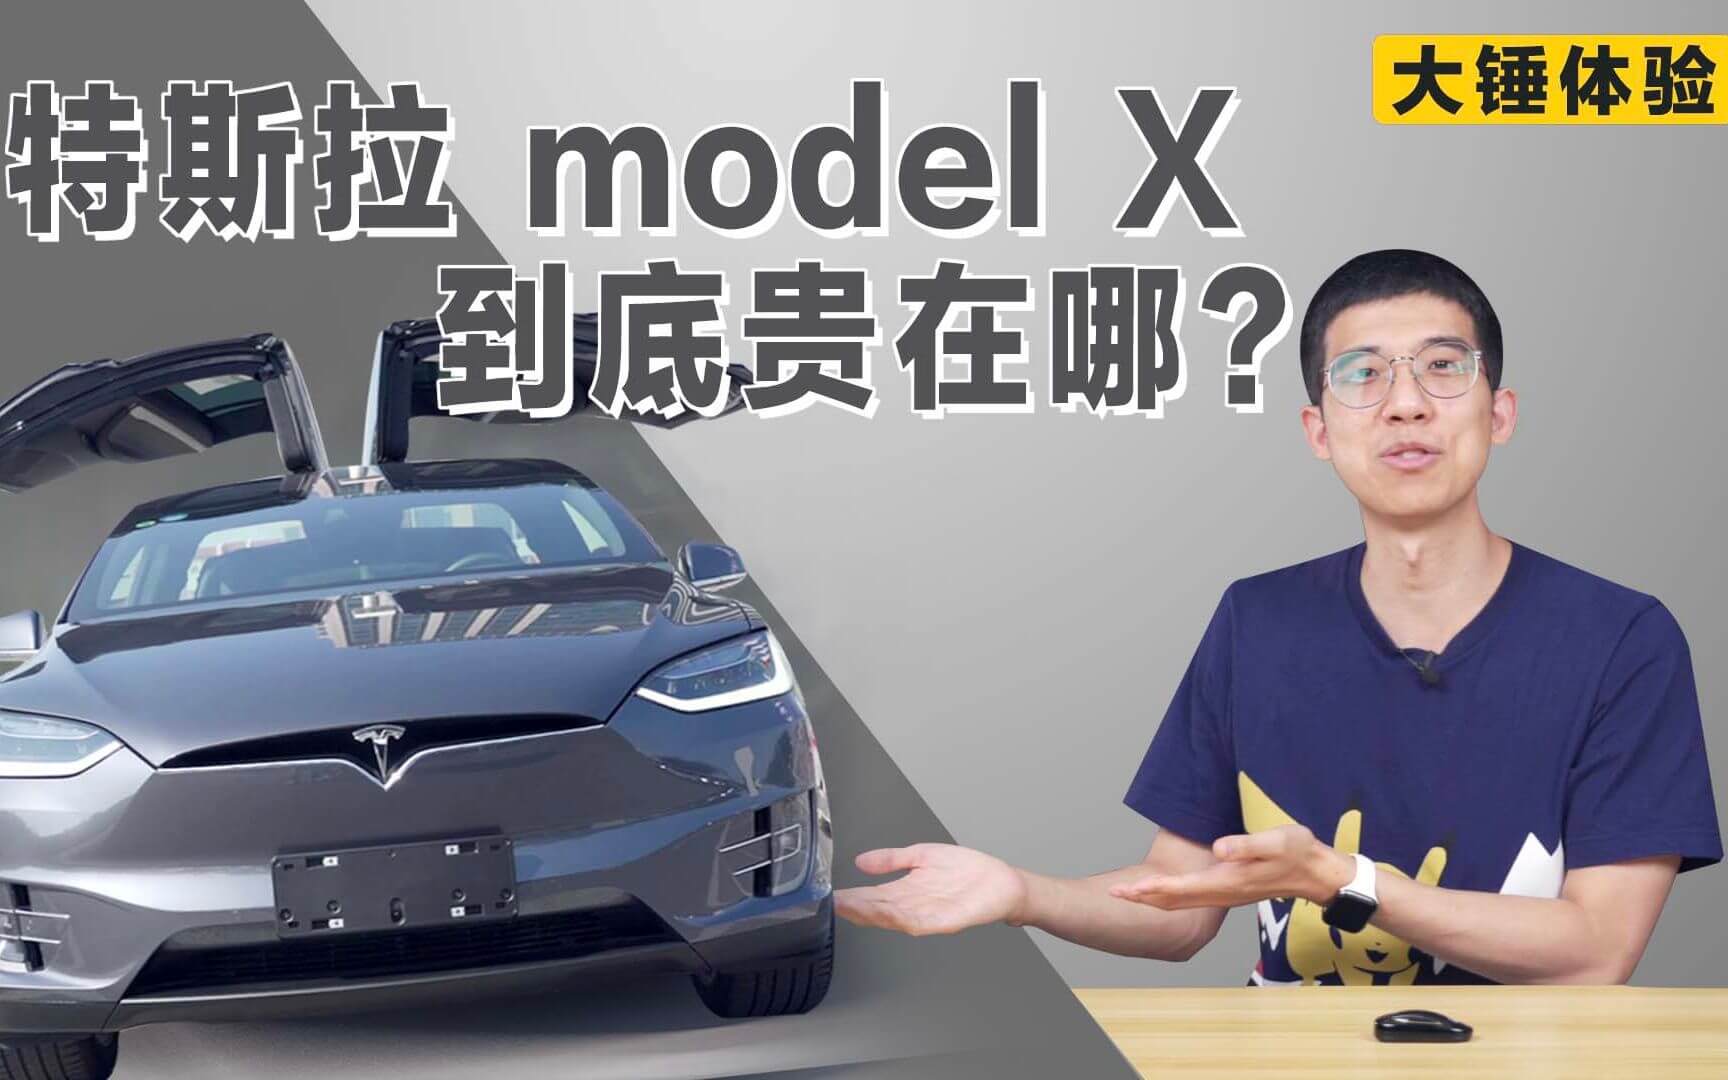 【大锤体验】特斯拉 Model X 到底贵在哪？ - 数浪